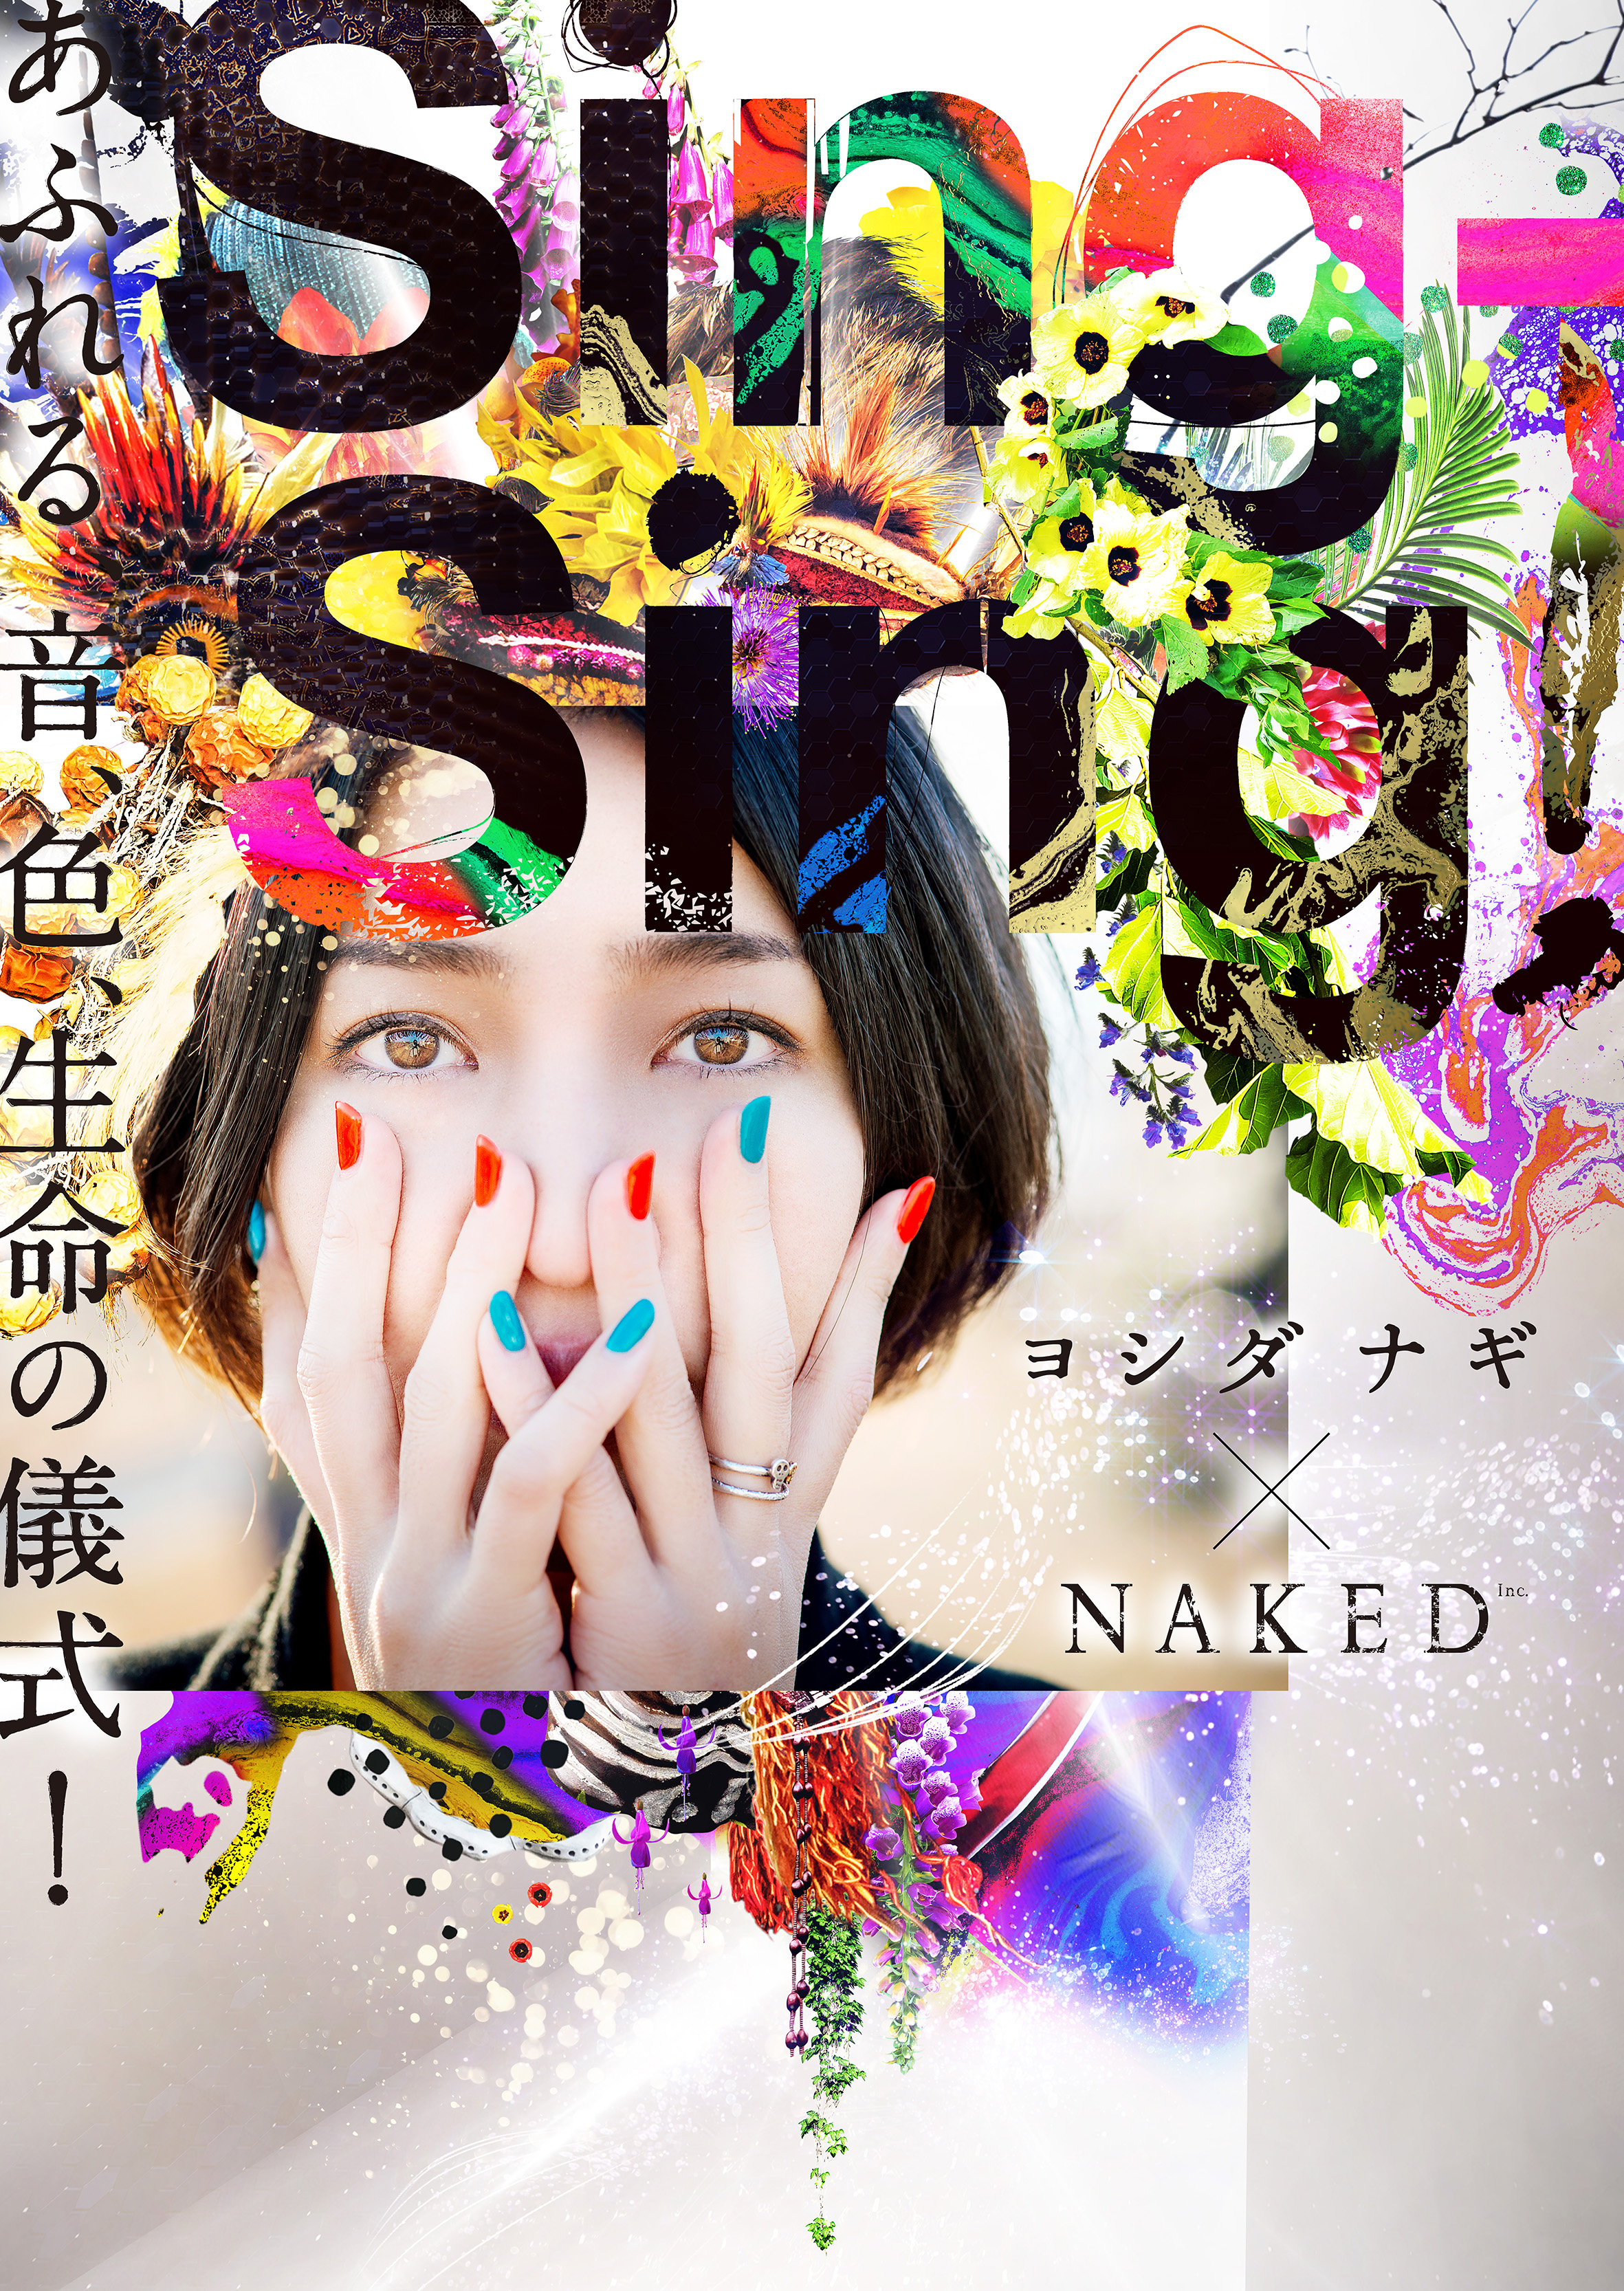 ヨシダナギ Naked 渋谷に現れるアフリカ体験 株式会社ネイキッドのプレスリリース